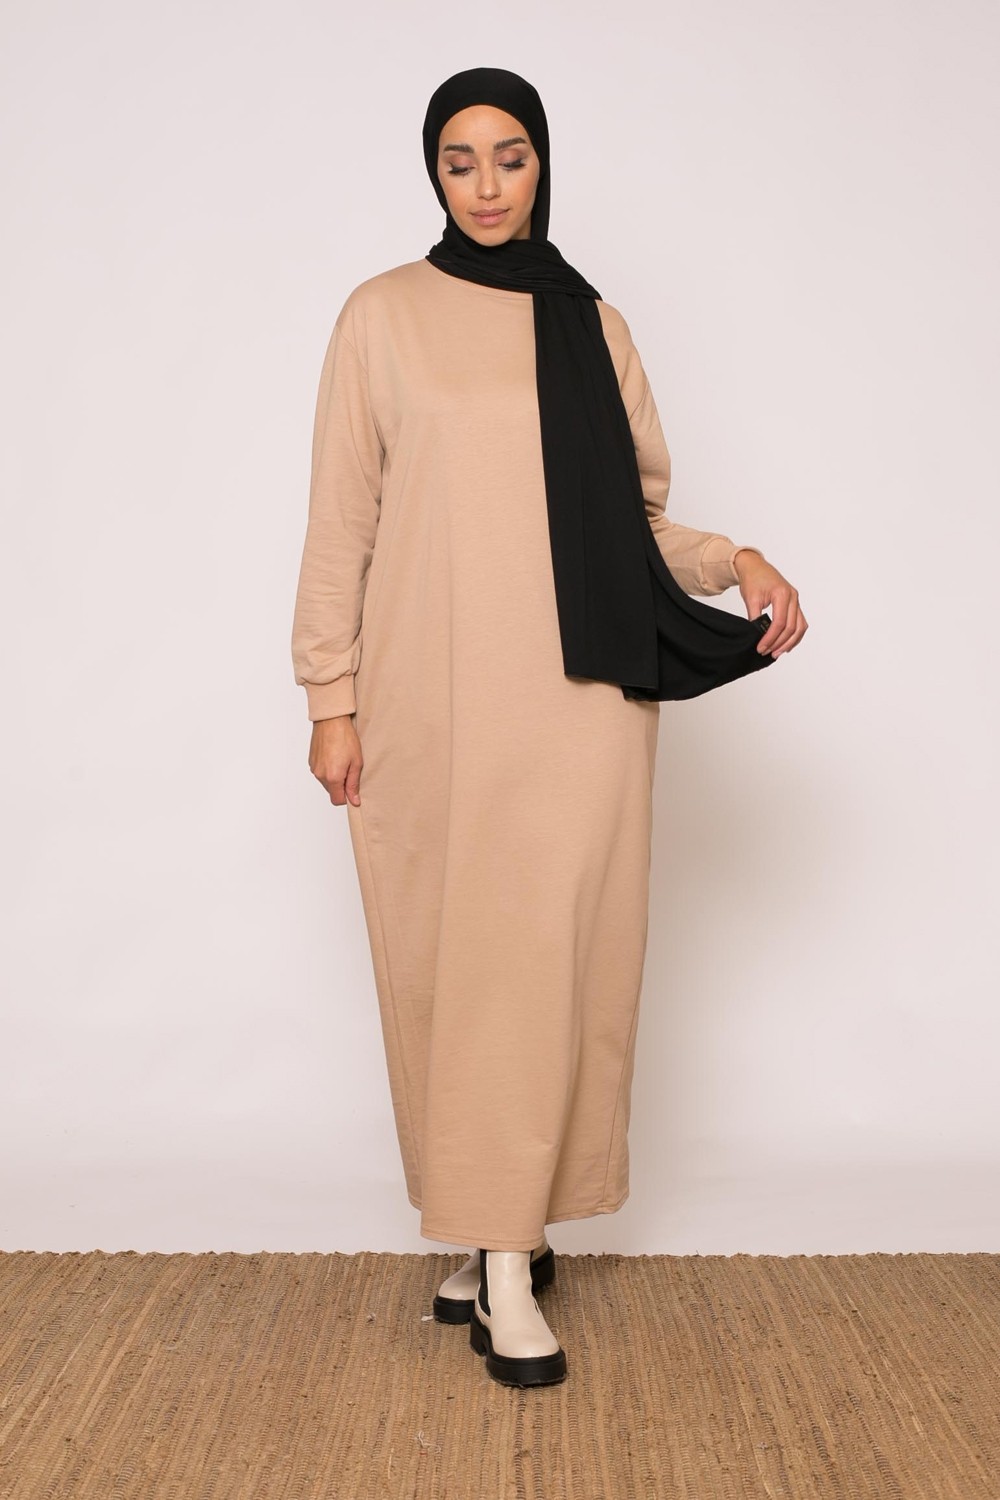 Robe sweat beige foncé sport wear pour femme musulmane boutique hijab pas cher